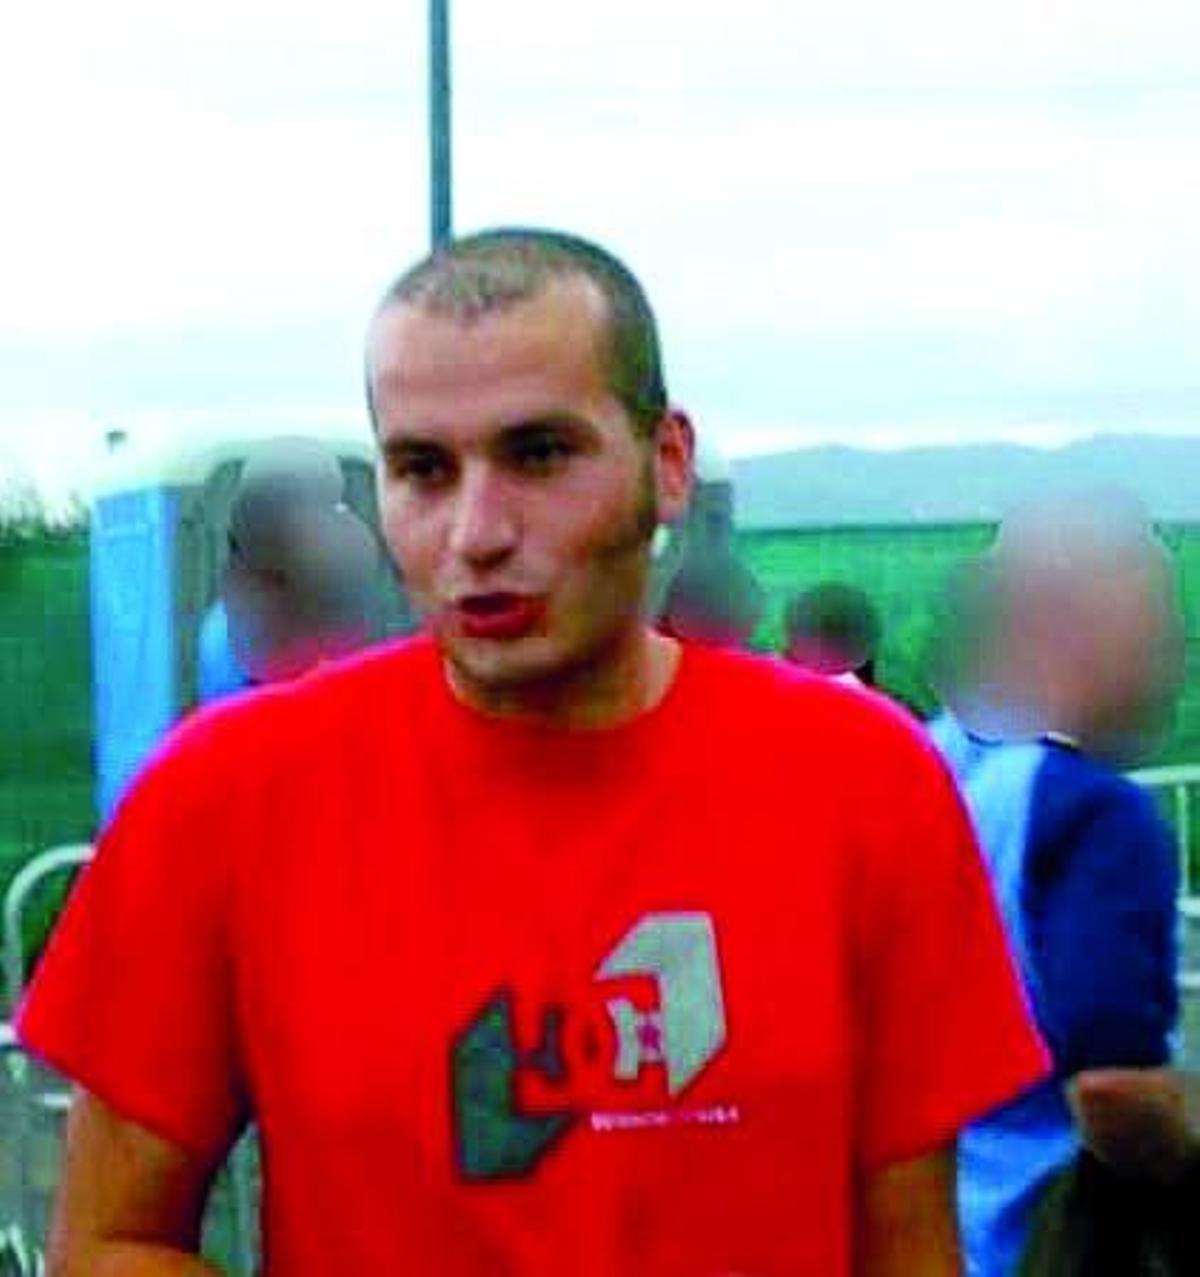 El presunto asesino, en una imagen de 2007